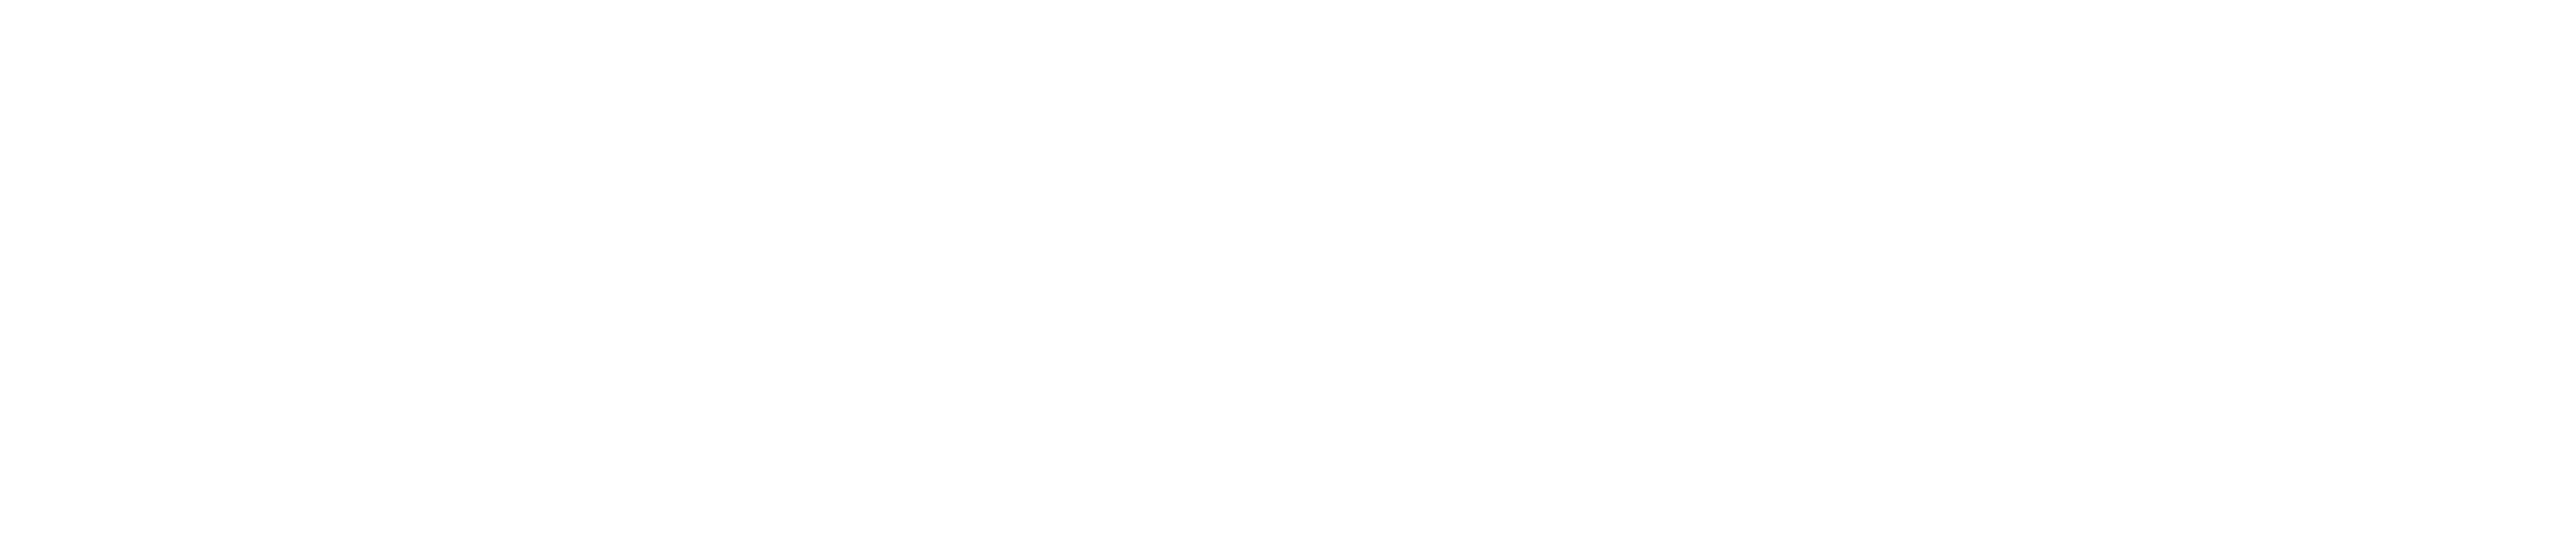 Foulk Living Logo, Shipley Living Logo & Millcroft Living Logo